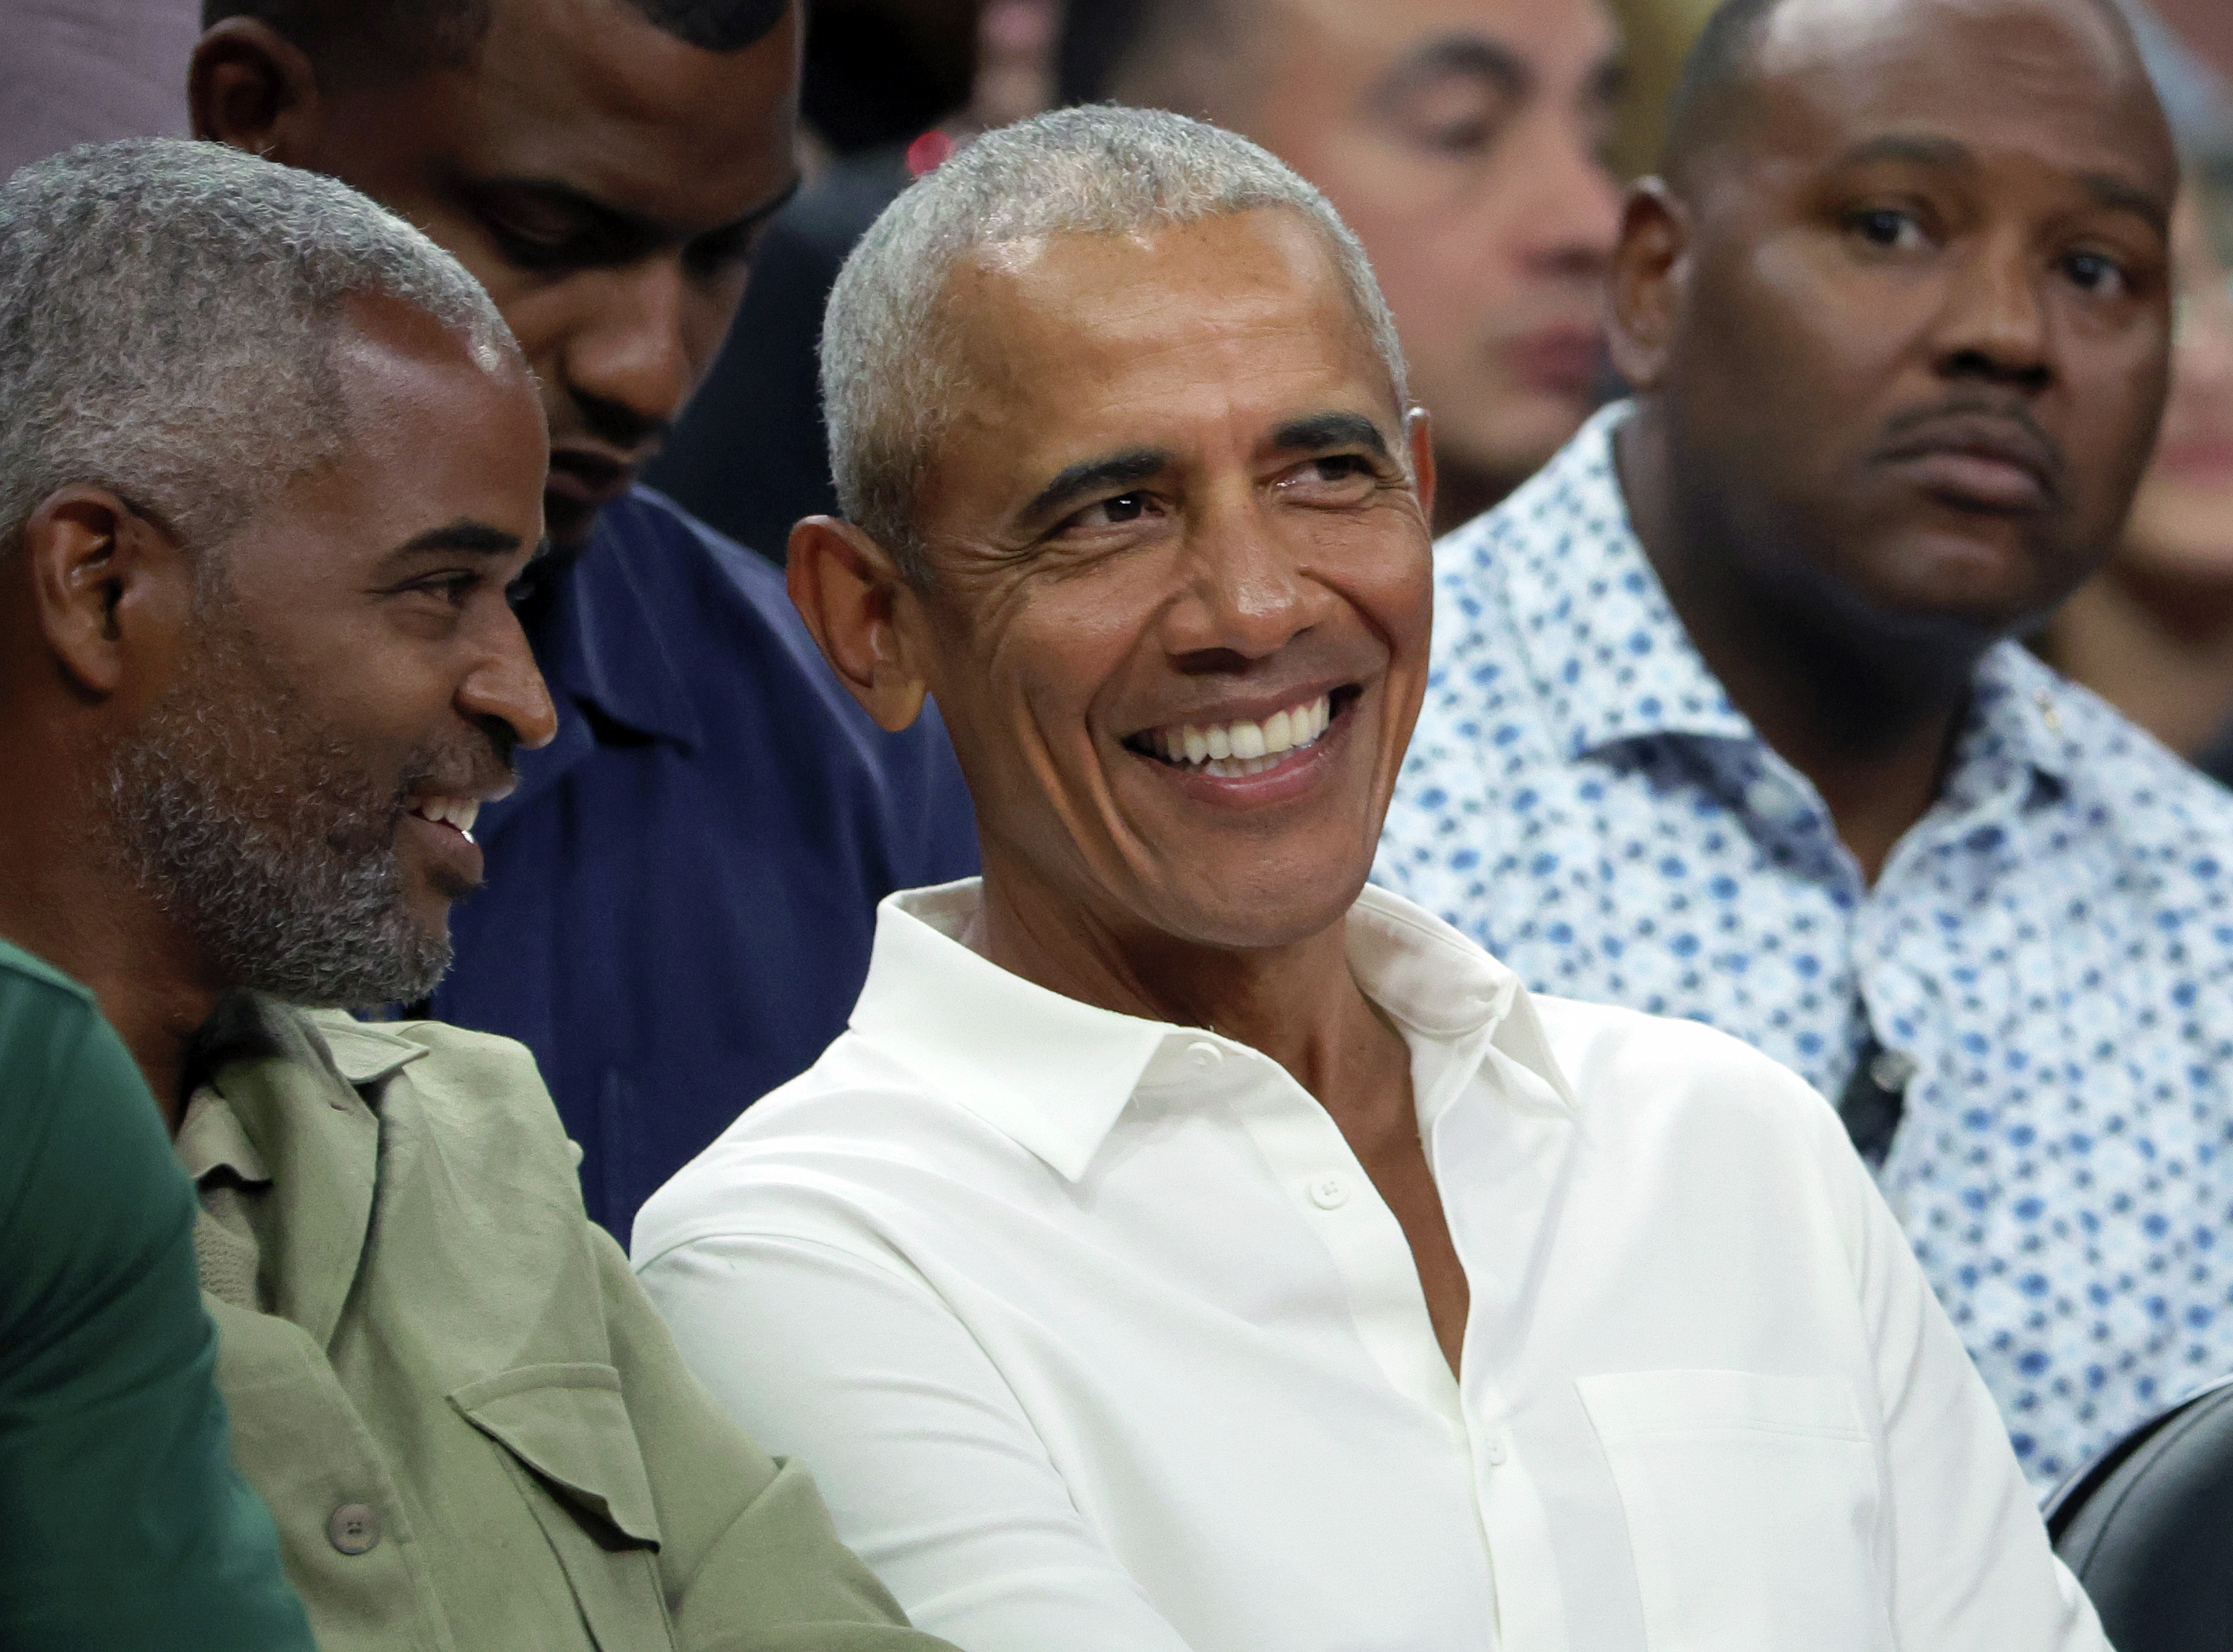 NEWSLINE:  Obama closer to endorsing VP Harris